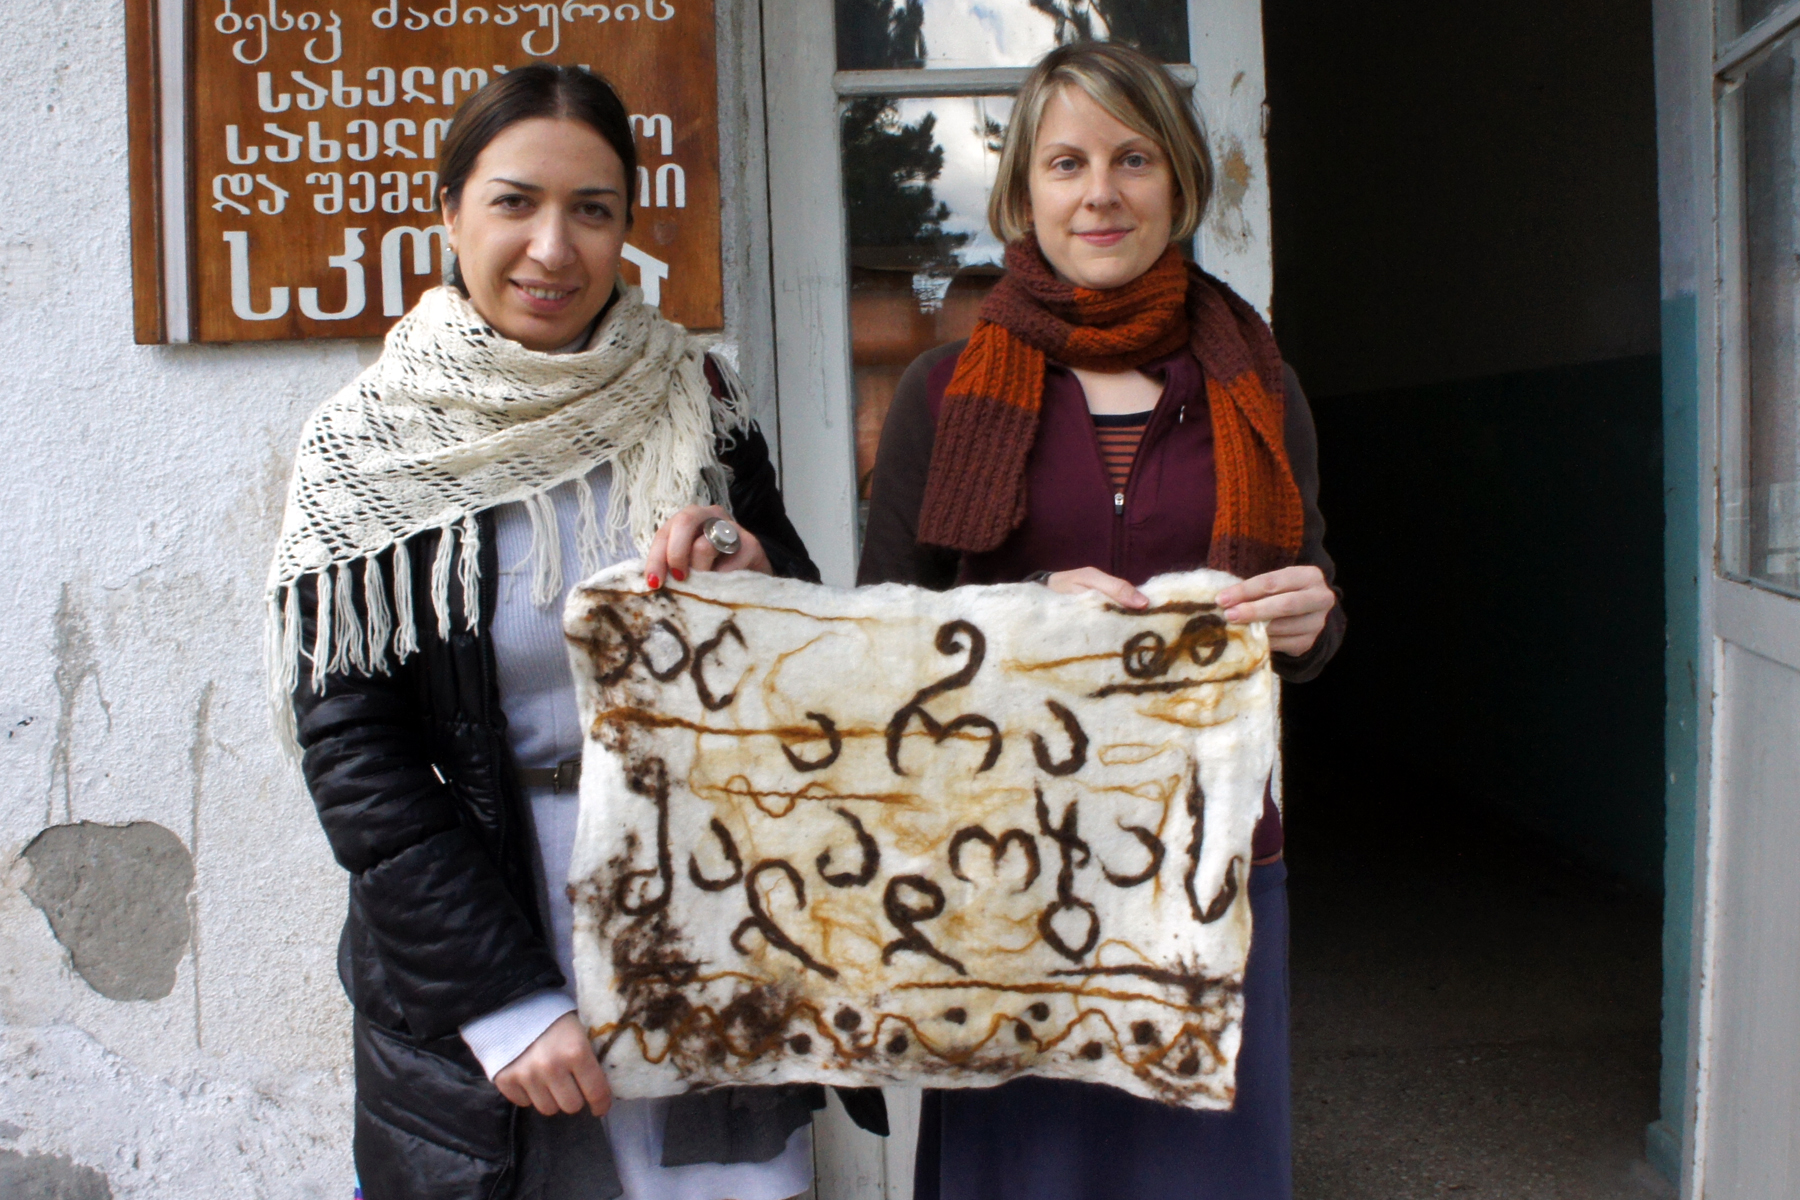   Ida Bakhturidze and Melissa Potter in front of the Alvani school.  